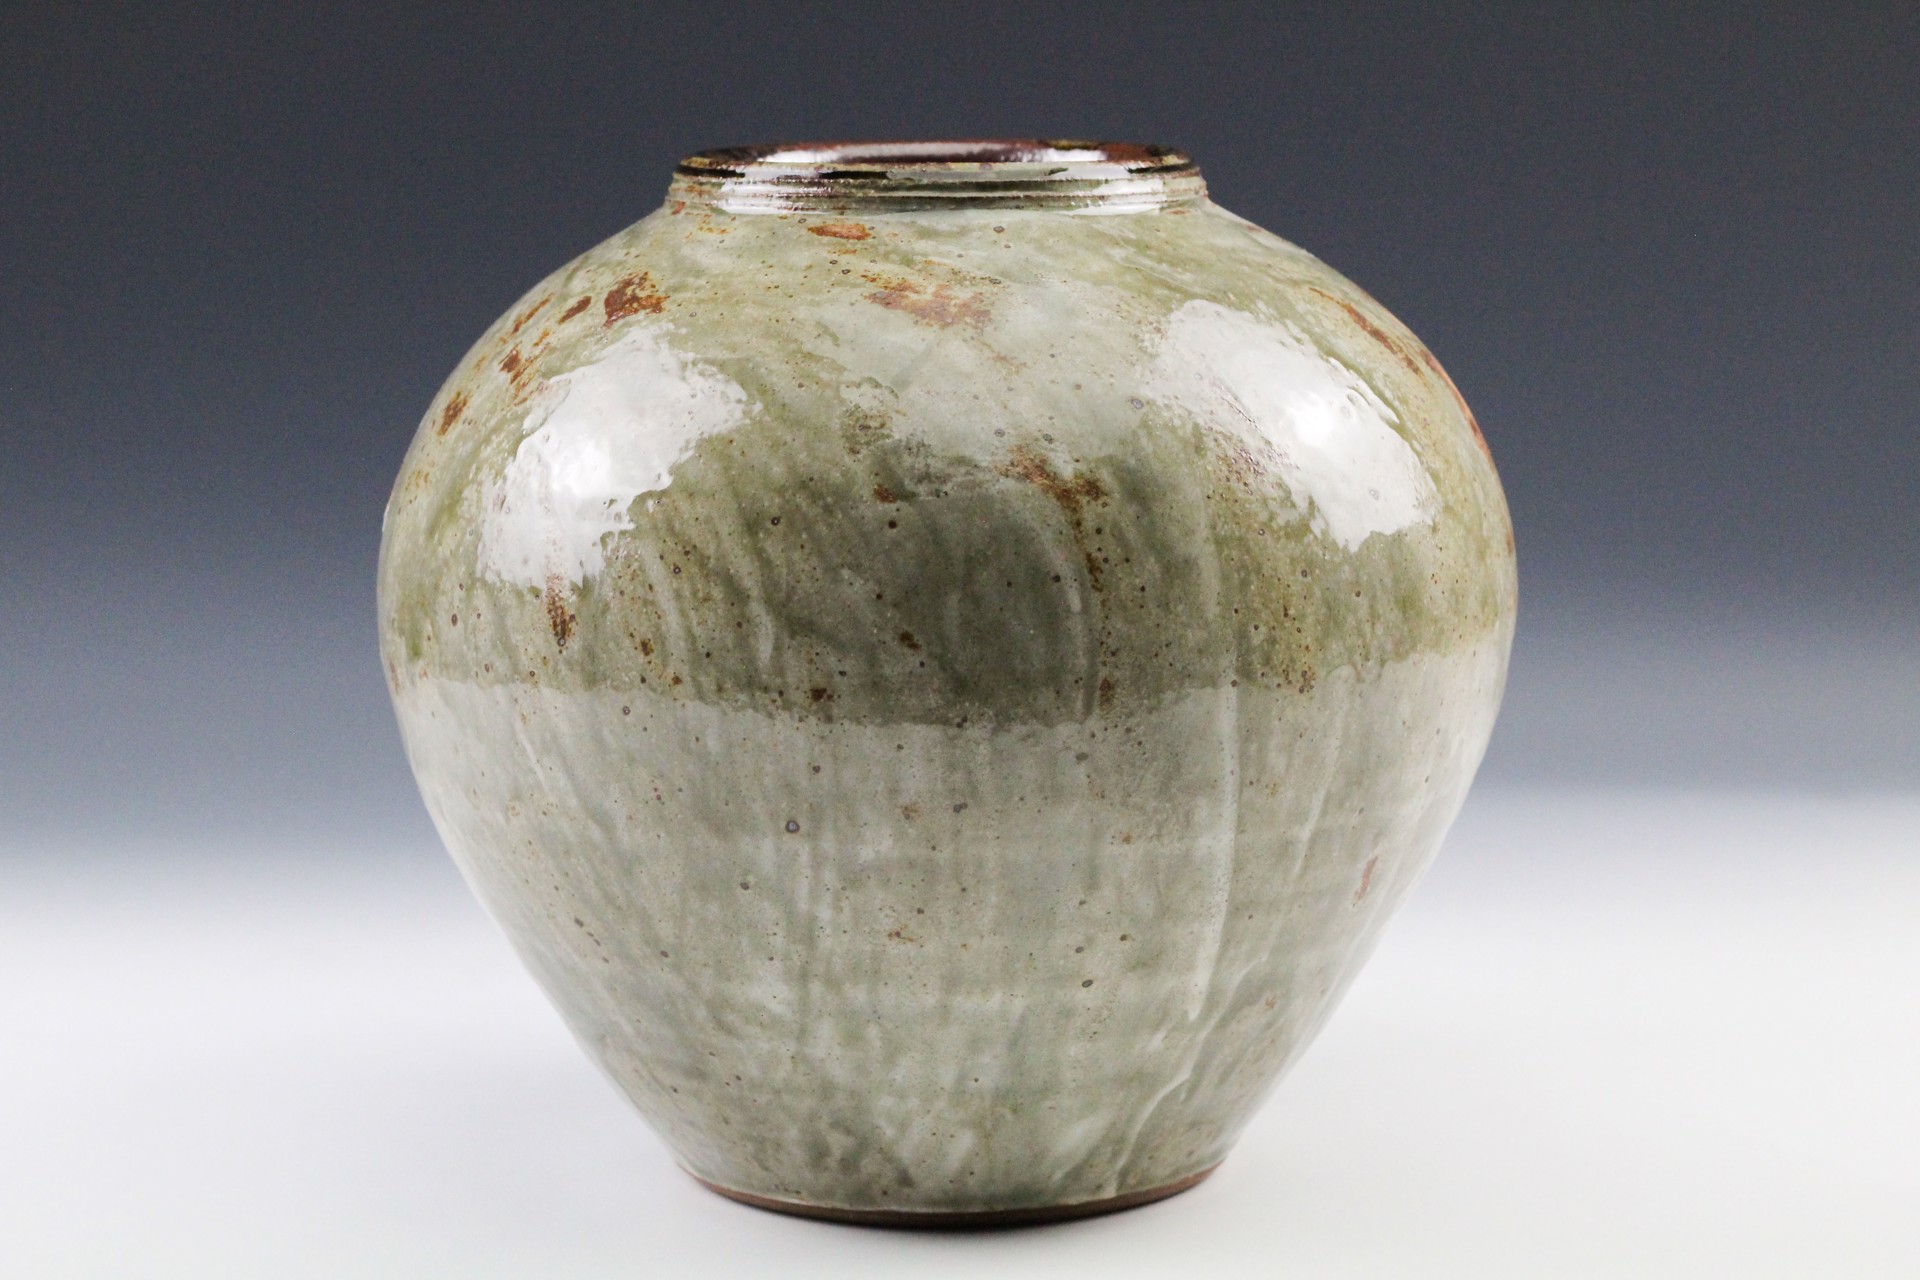 Vase by Rick Hintze